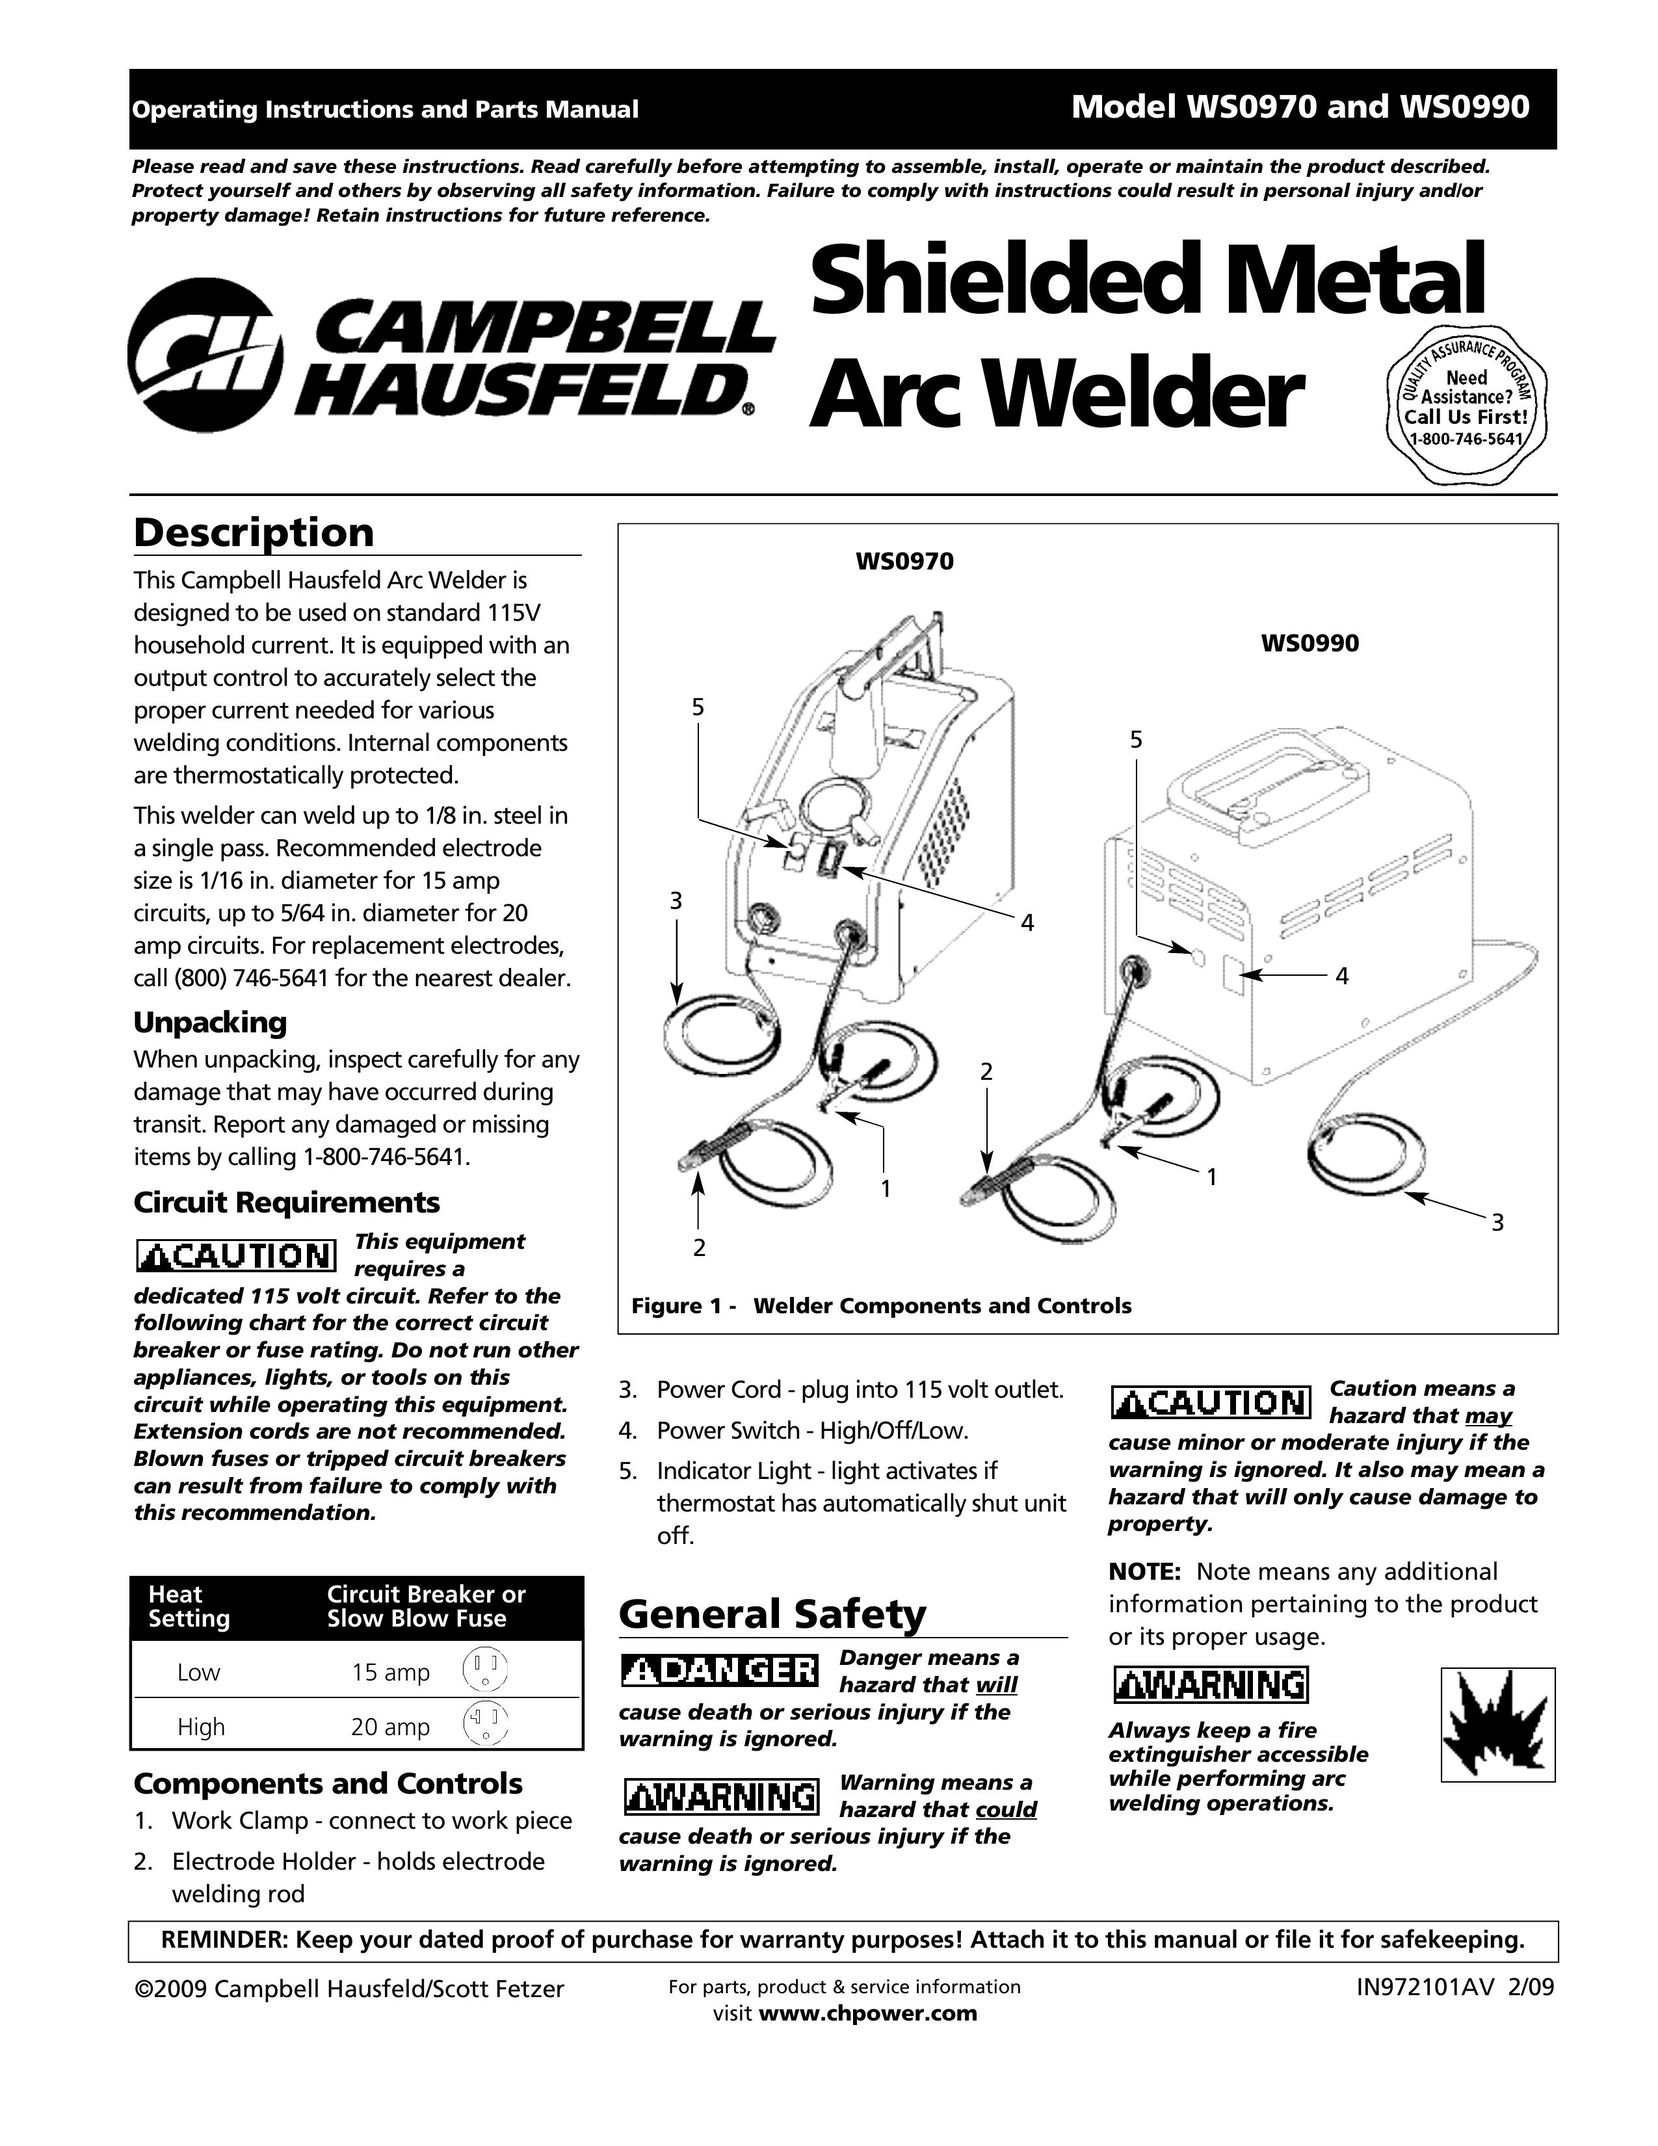 Campbell Hausfeld IN972101AV Welder User Manual